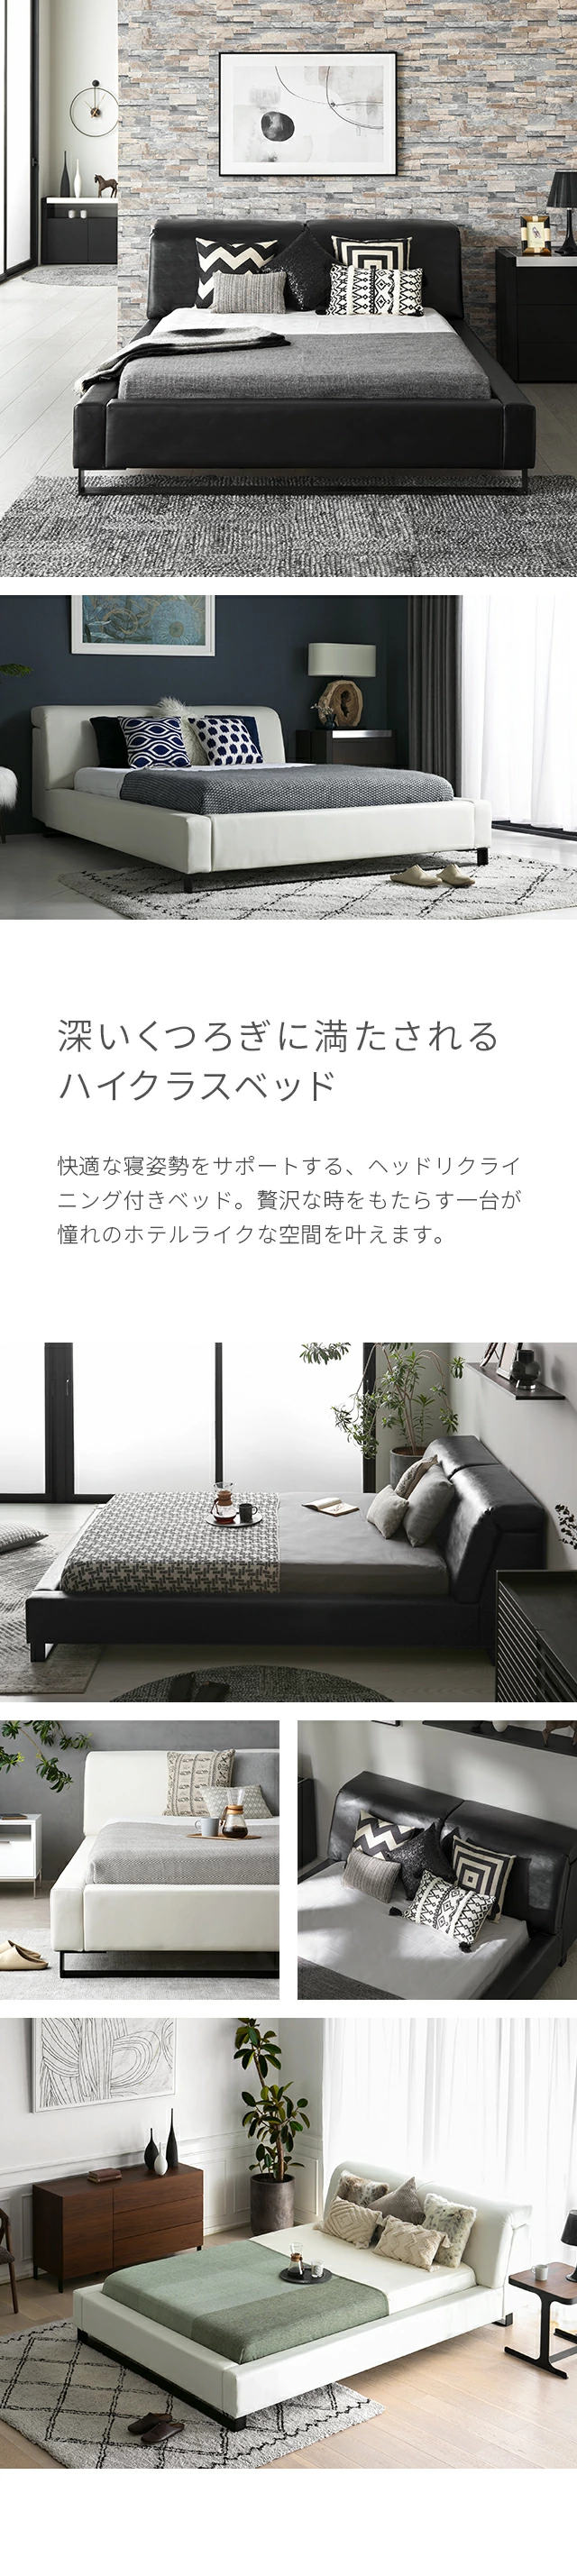 ECLISSE｜【アルモニア公式】家具・インテリア通販